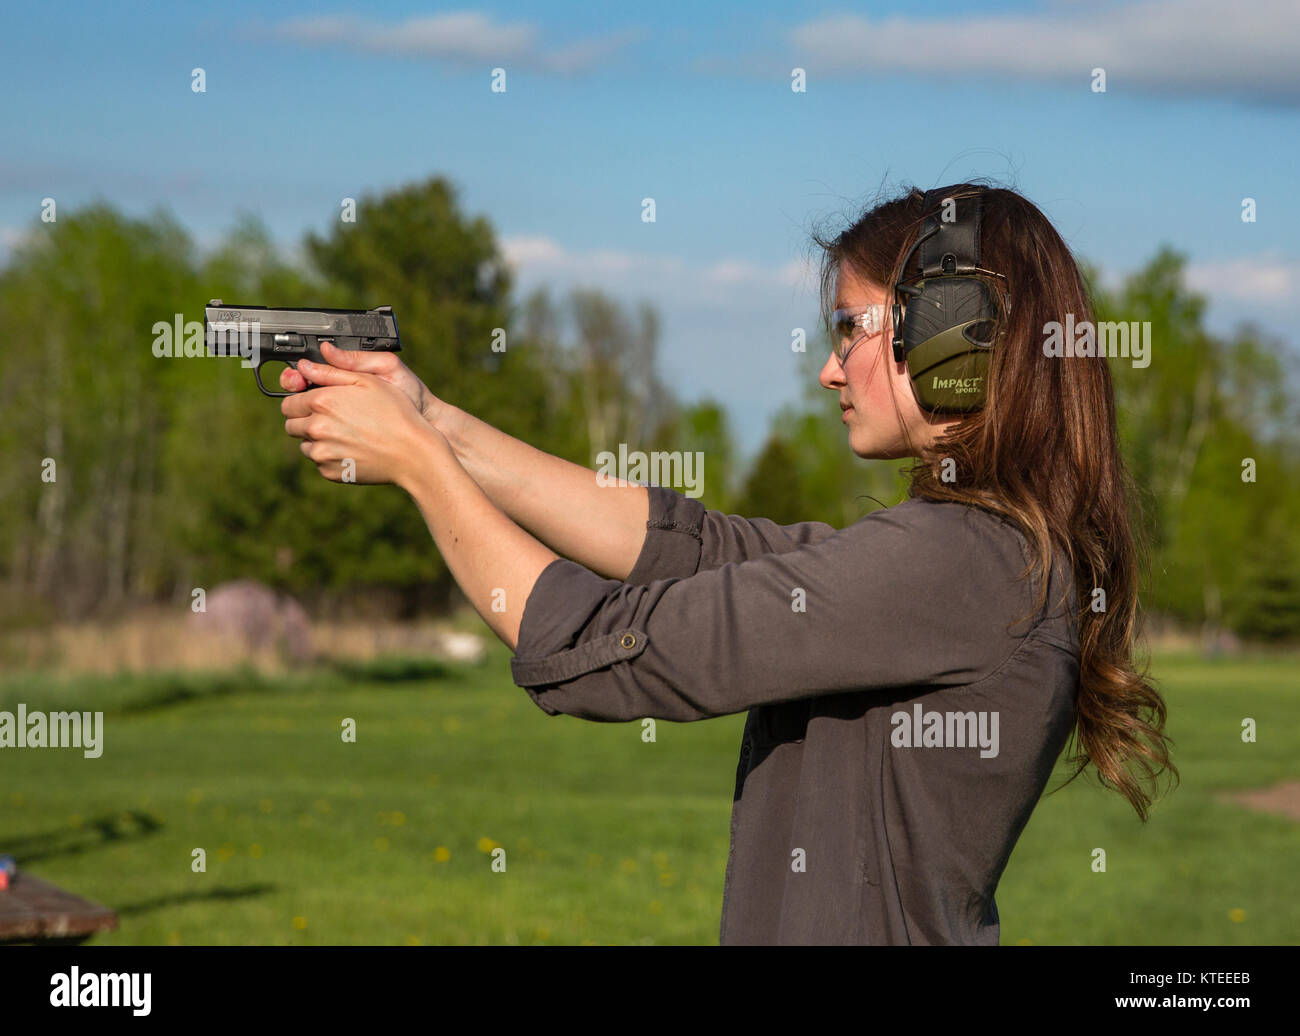 Jeune femme le tournage d'un Smith & Wesson M&P pistolet Bouclier Banque D'Images